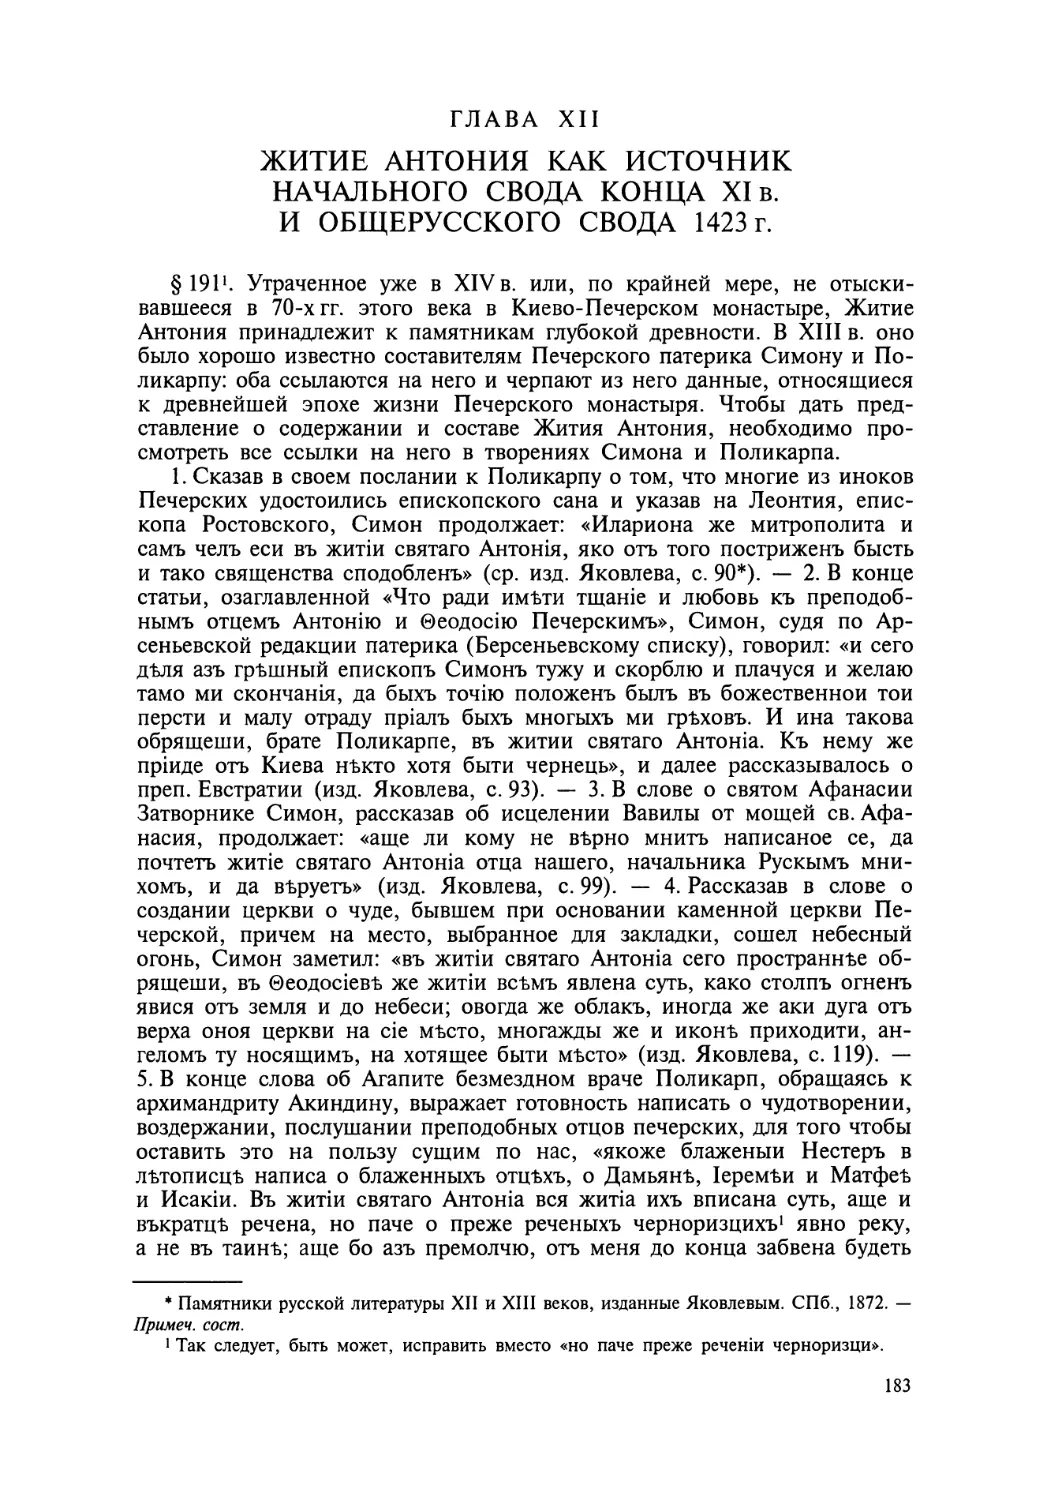 Глава XII. Житие Антония как источник Начального свода конца XI в. и общерусского свода 1423 г